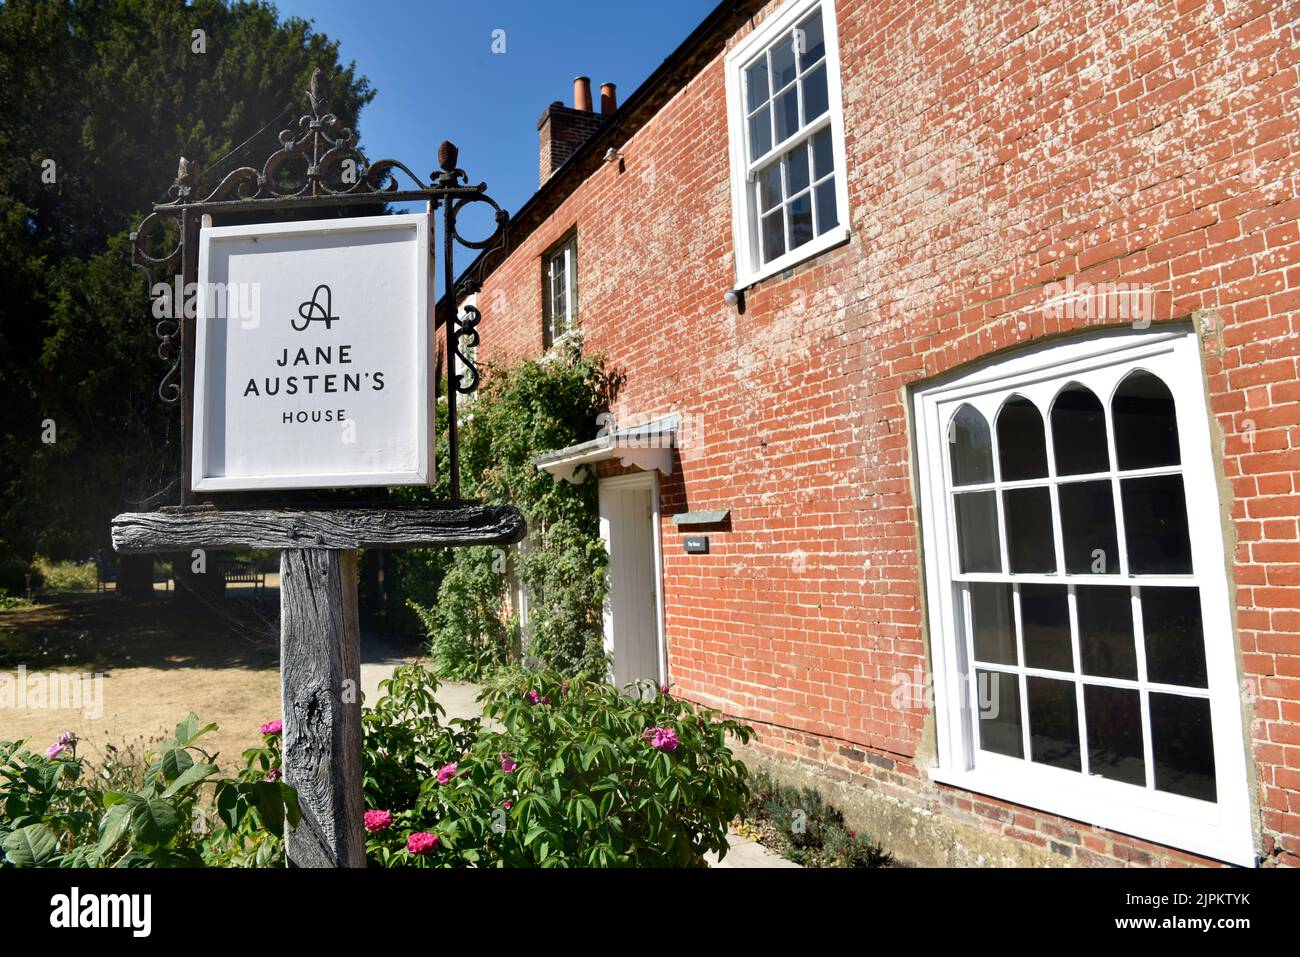 Jane Austen’s House, Chawton, vicino ad Alton, Hampshire, Regno Unito. Questa casa è dove Jane ha vissuto per gli ultimi 8 anni della sua vita (1809-17). Foto Stock